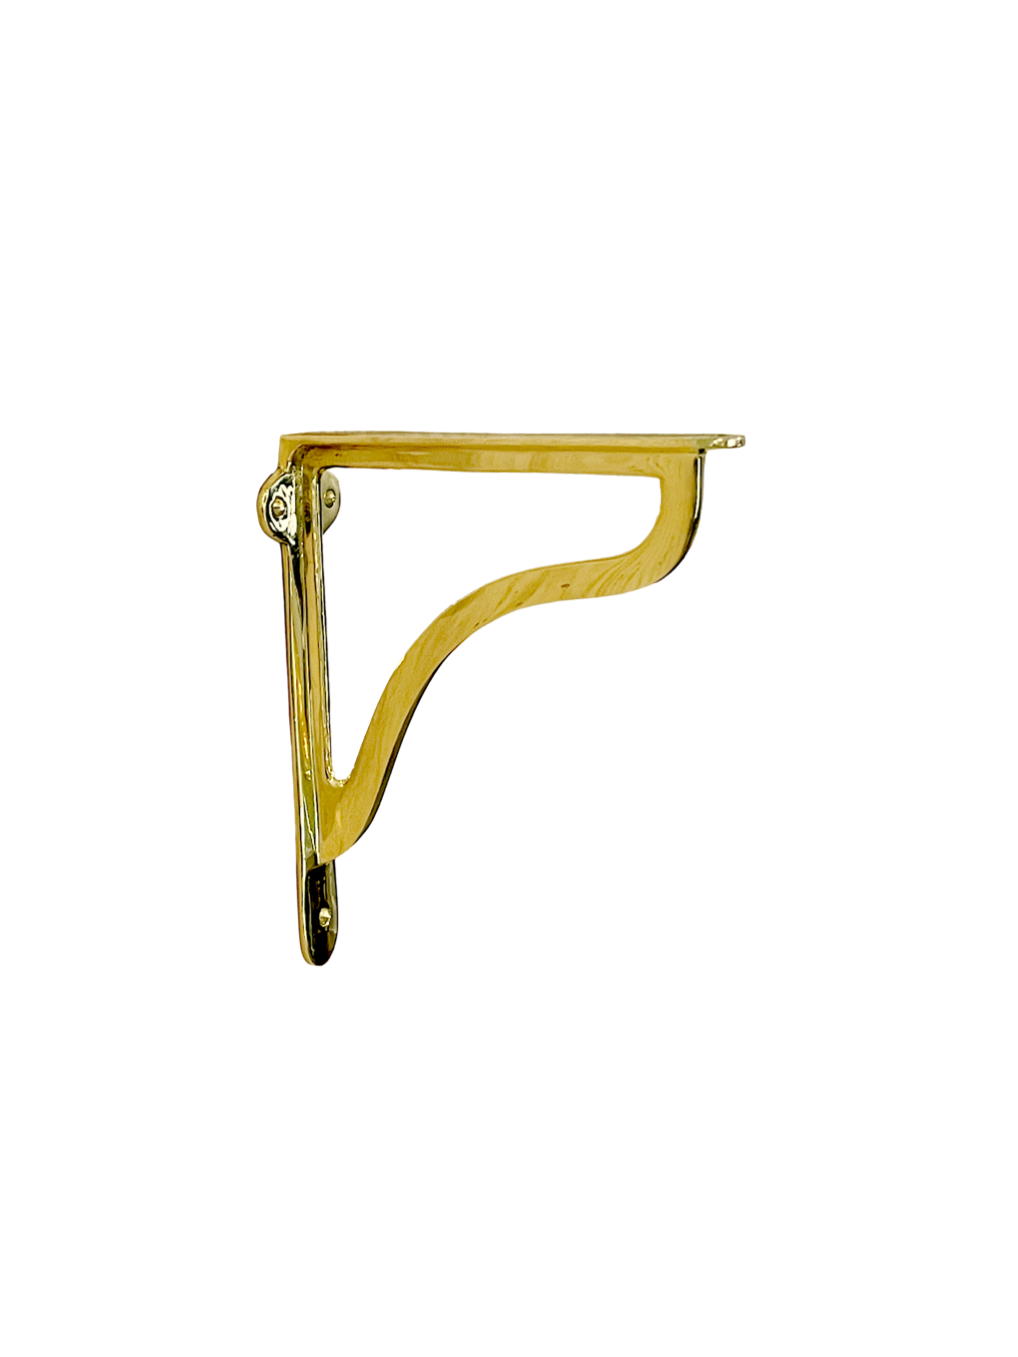 HRLBrass Shelf Brackets - Polished Unlacquered Brass – hrlbrass